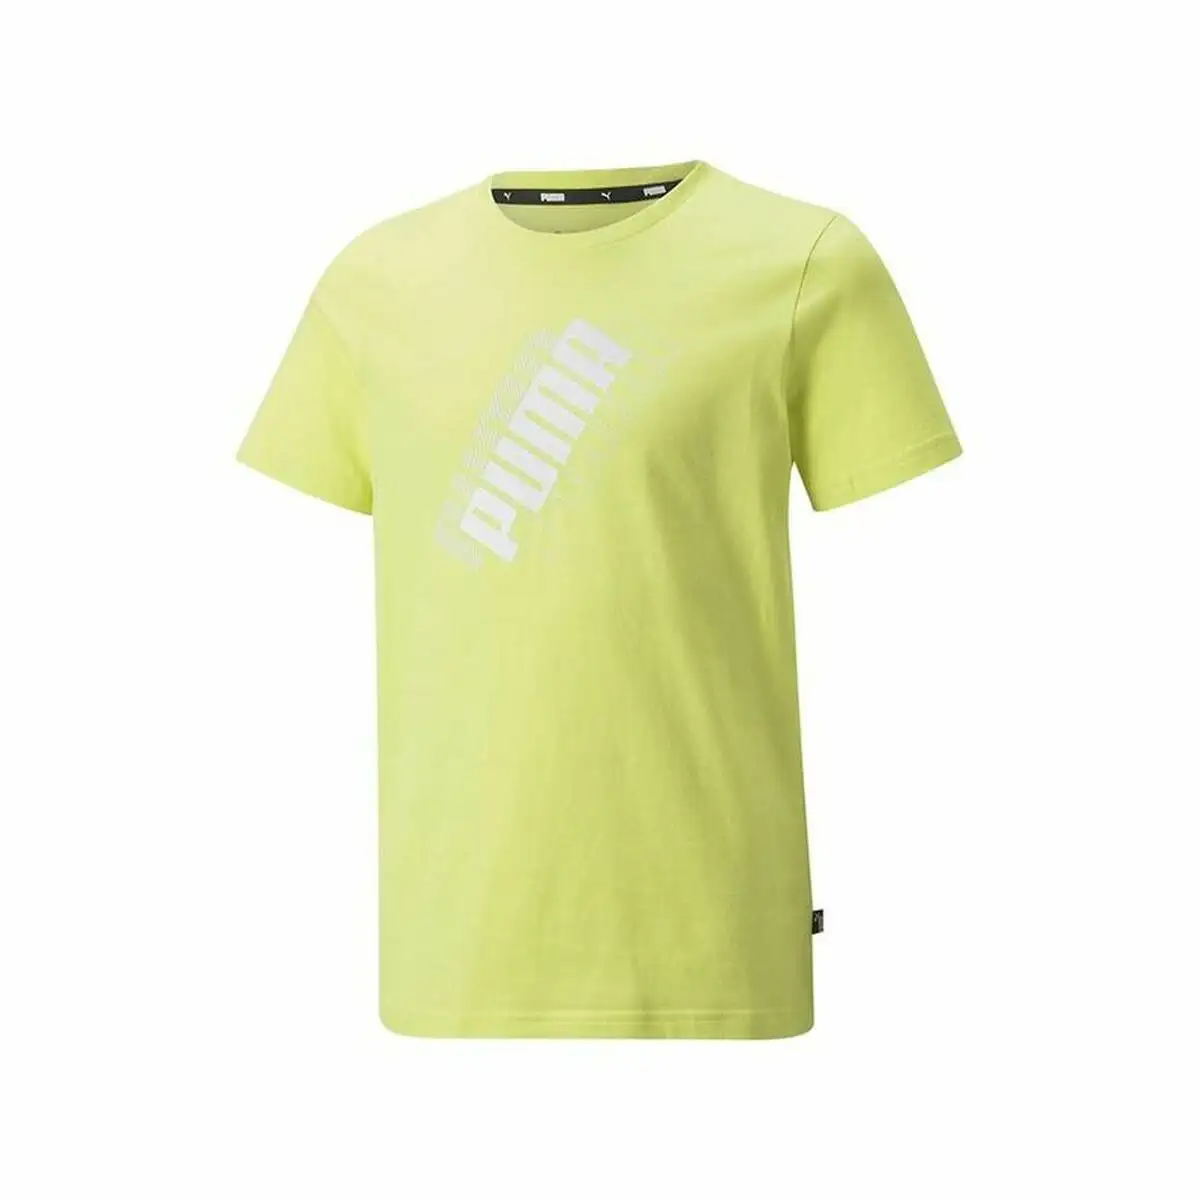 Shirt a manches courtes enfant puma power logo jaune_4712. DIAYTAR SENEGAL - L'Art de Choisir, l'Art de S'émerveiller. Explorez notre boutique en ligne et choisissez des articles qui éveillent votre sens de l'émerveillement.